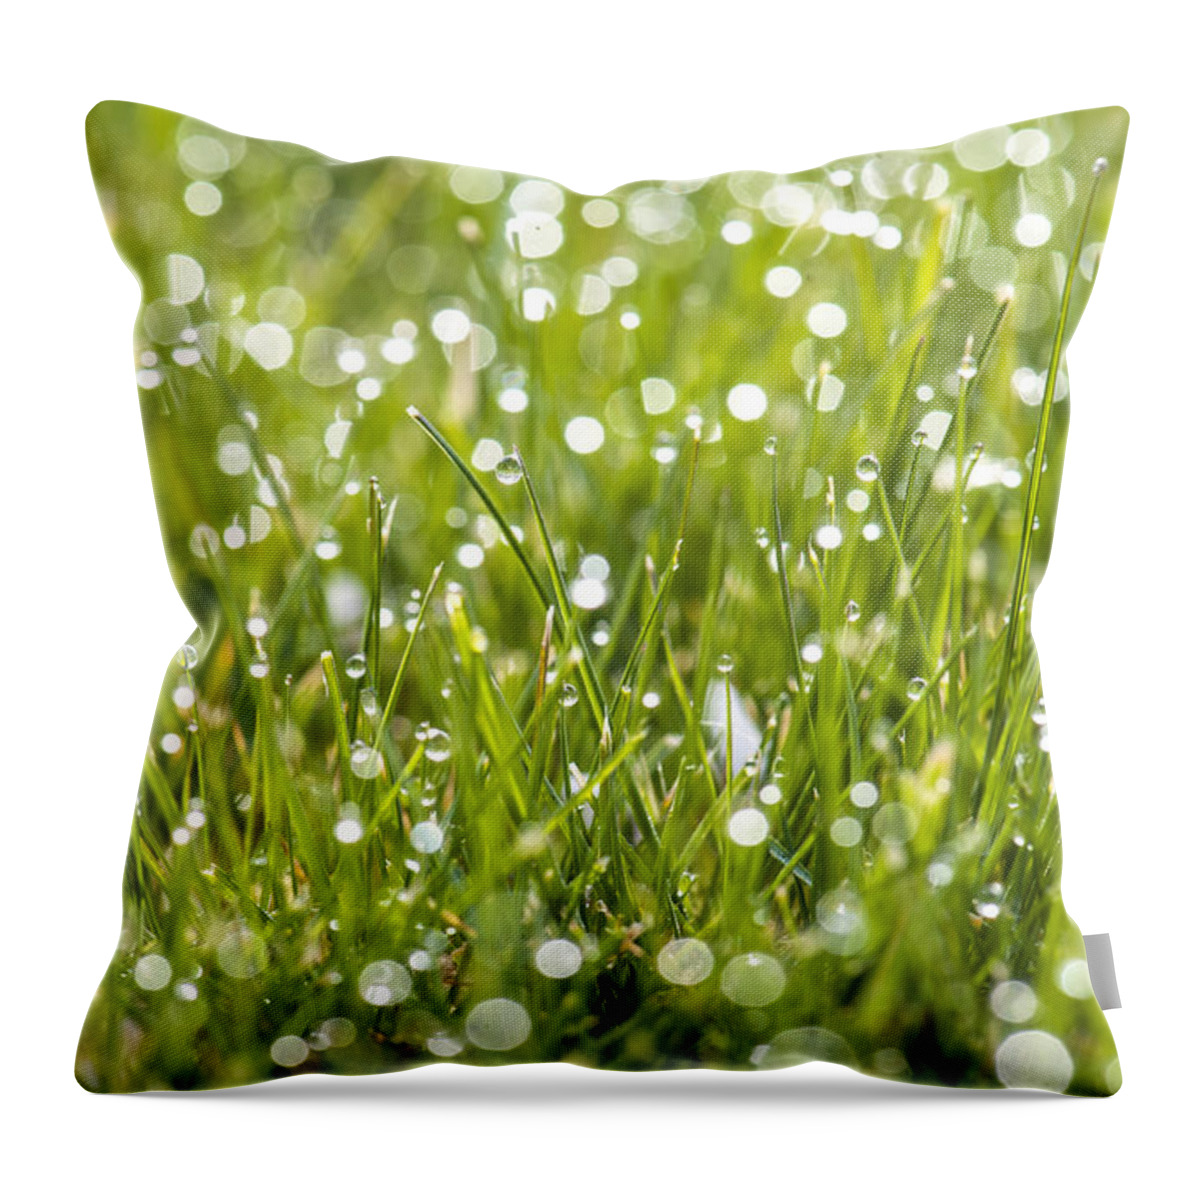 Grass Throw Pillow featuring the photograph Morning Dew by Matt McDonald